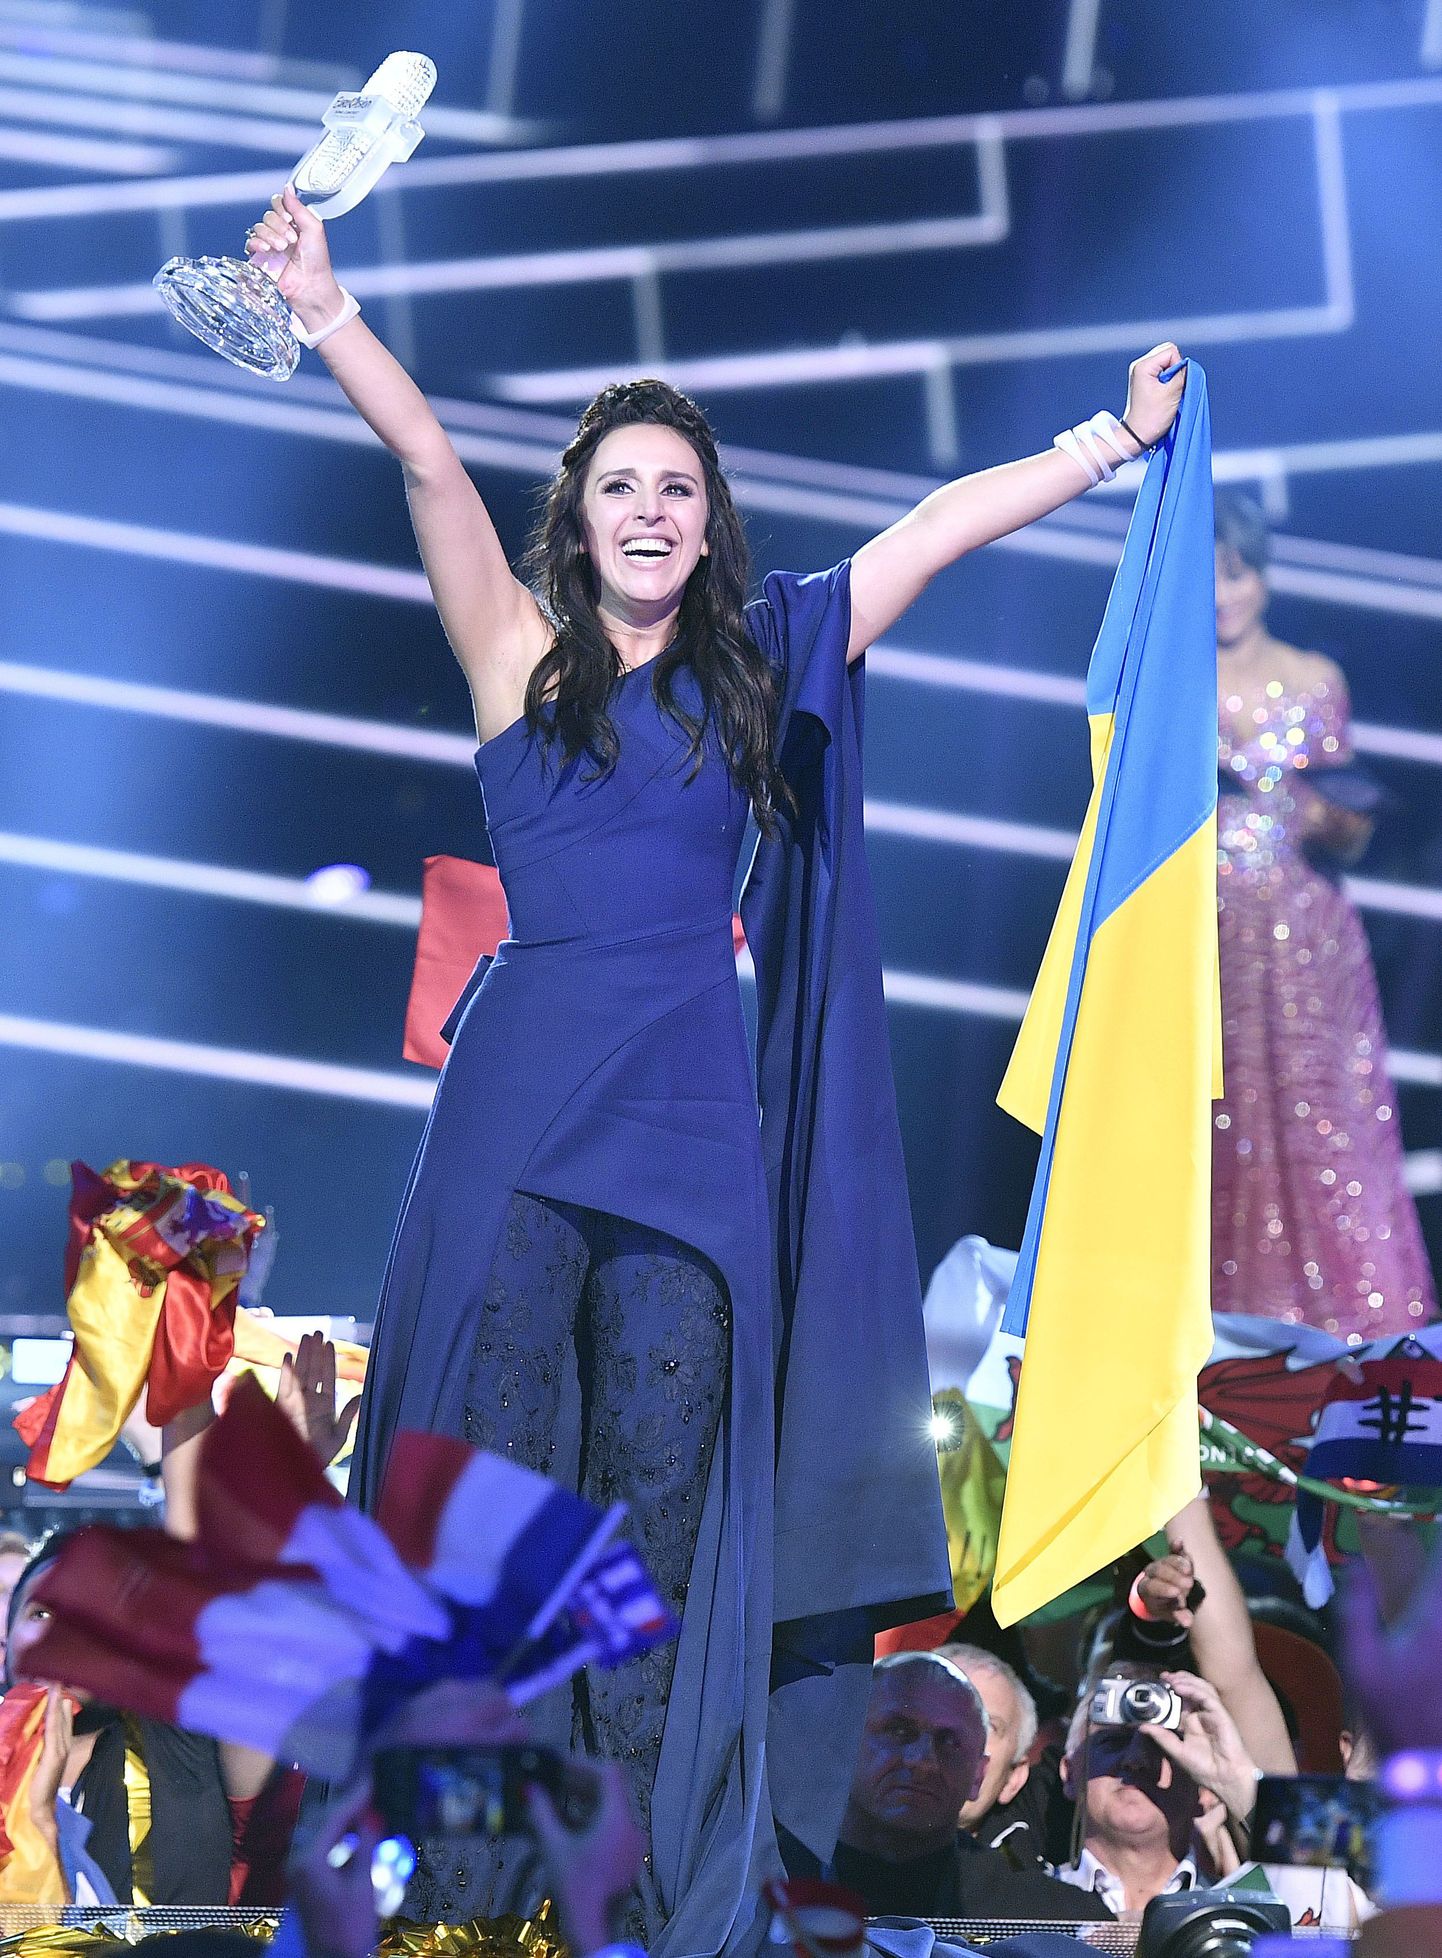 Stockholmis toimunud 61. Eurovisiooni lauluvõistluse võitis Ukraina esindaja Jamala